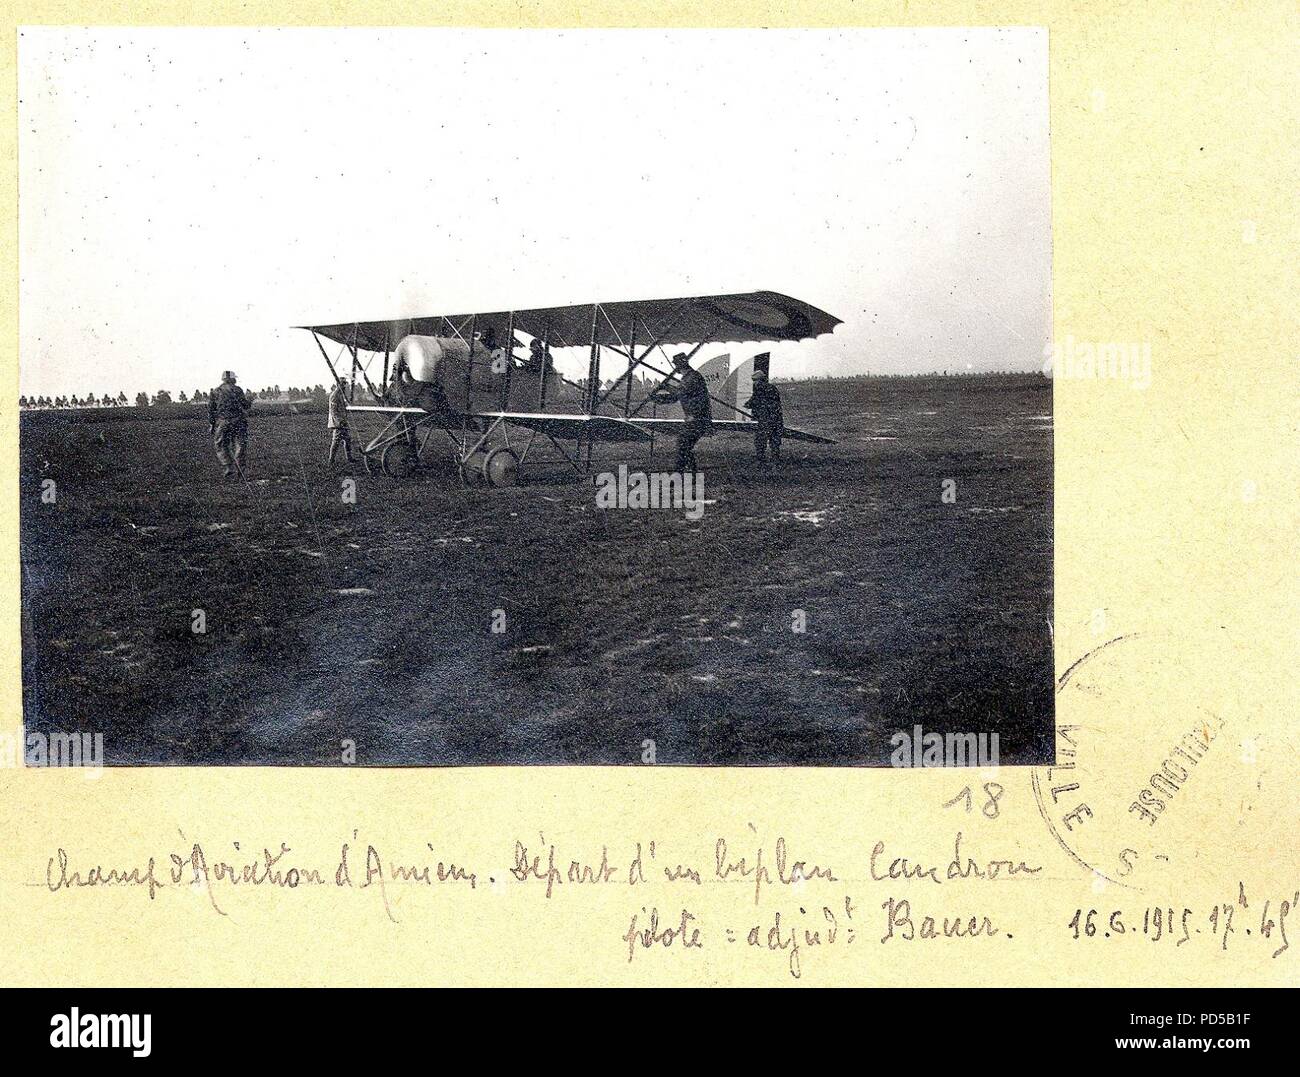 Amiens champ d'aviation. départ d'un biplan Caudron G.III. pilote adjudant Bauer - Fonds Berthelé - 49Fi1871-18. Stock Photo